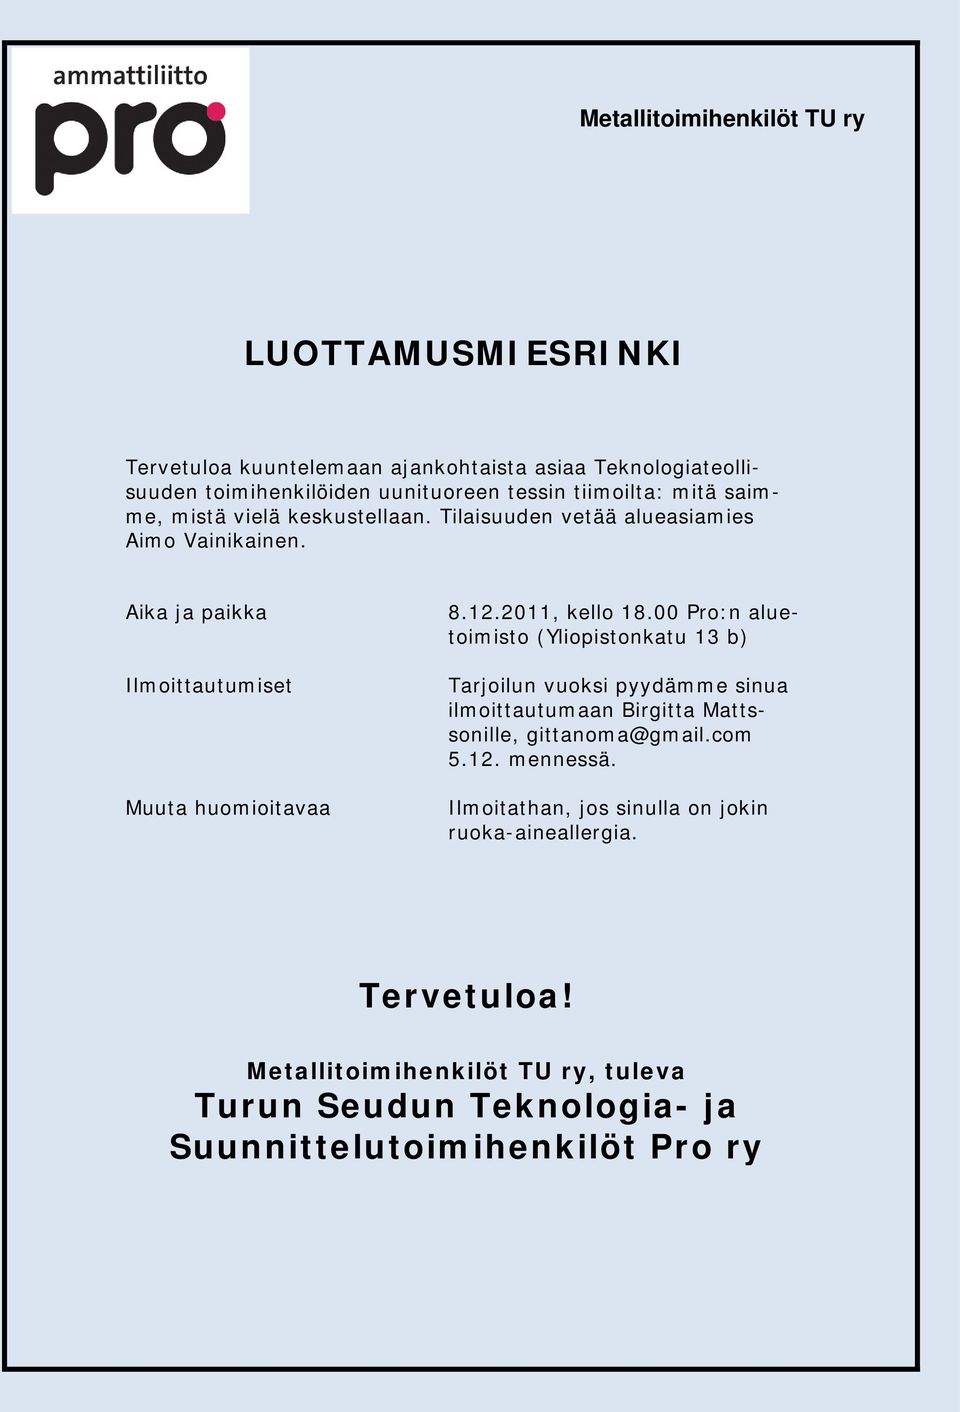 2011, kello 18.00 Pro:n aluetoimisto (Yliopistonkatu 13 b) Tarjoilun vuoksi pyydämme sinua ilmoittautumaan Birgitta Mattssonille, gittanoma@gmail.com 5.12.